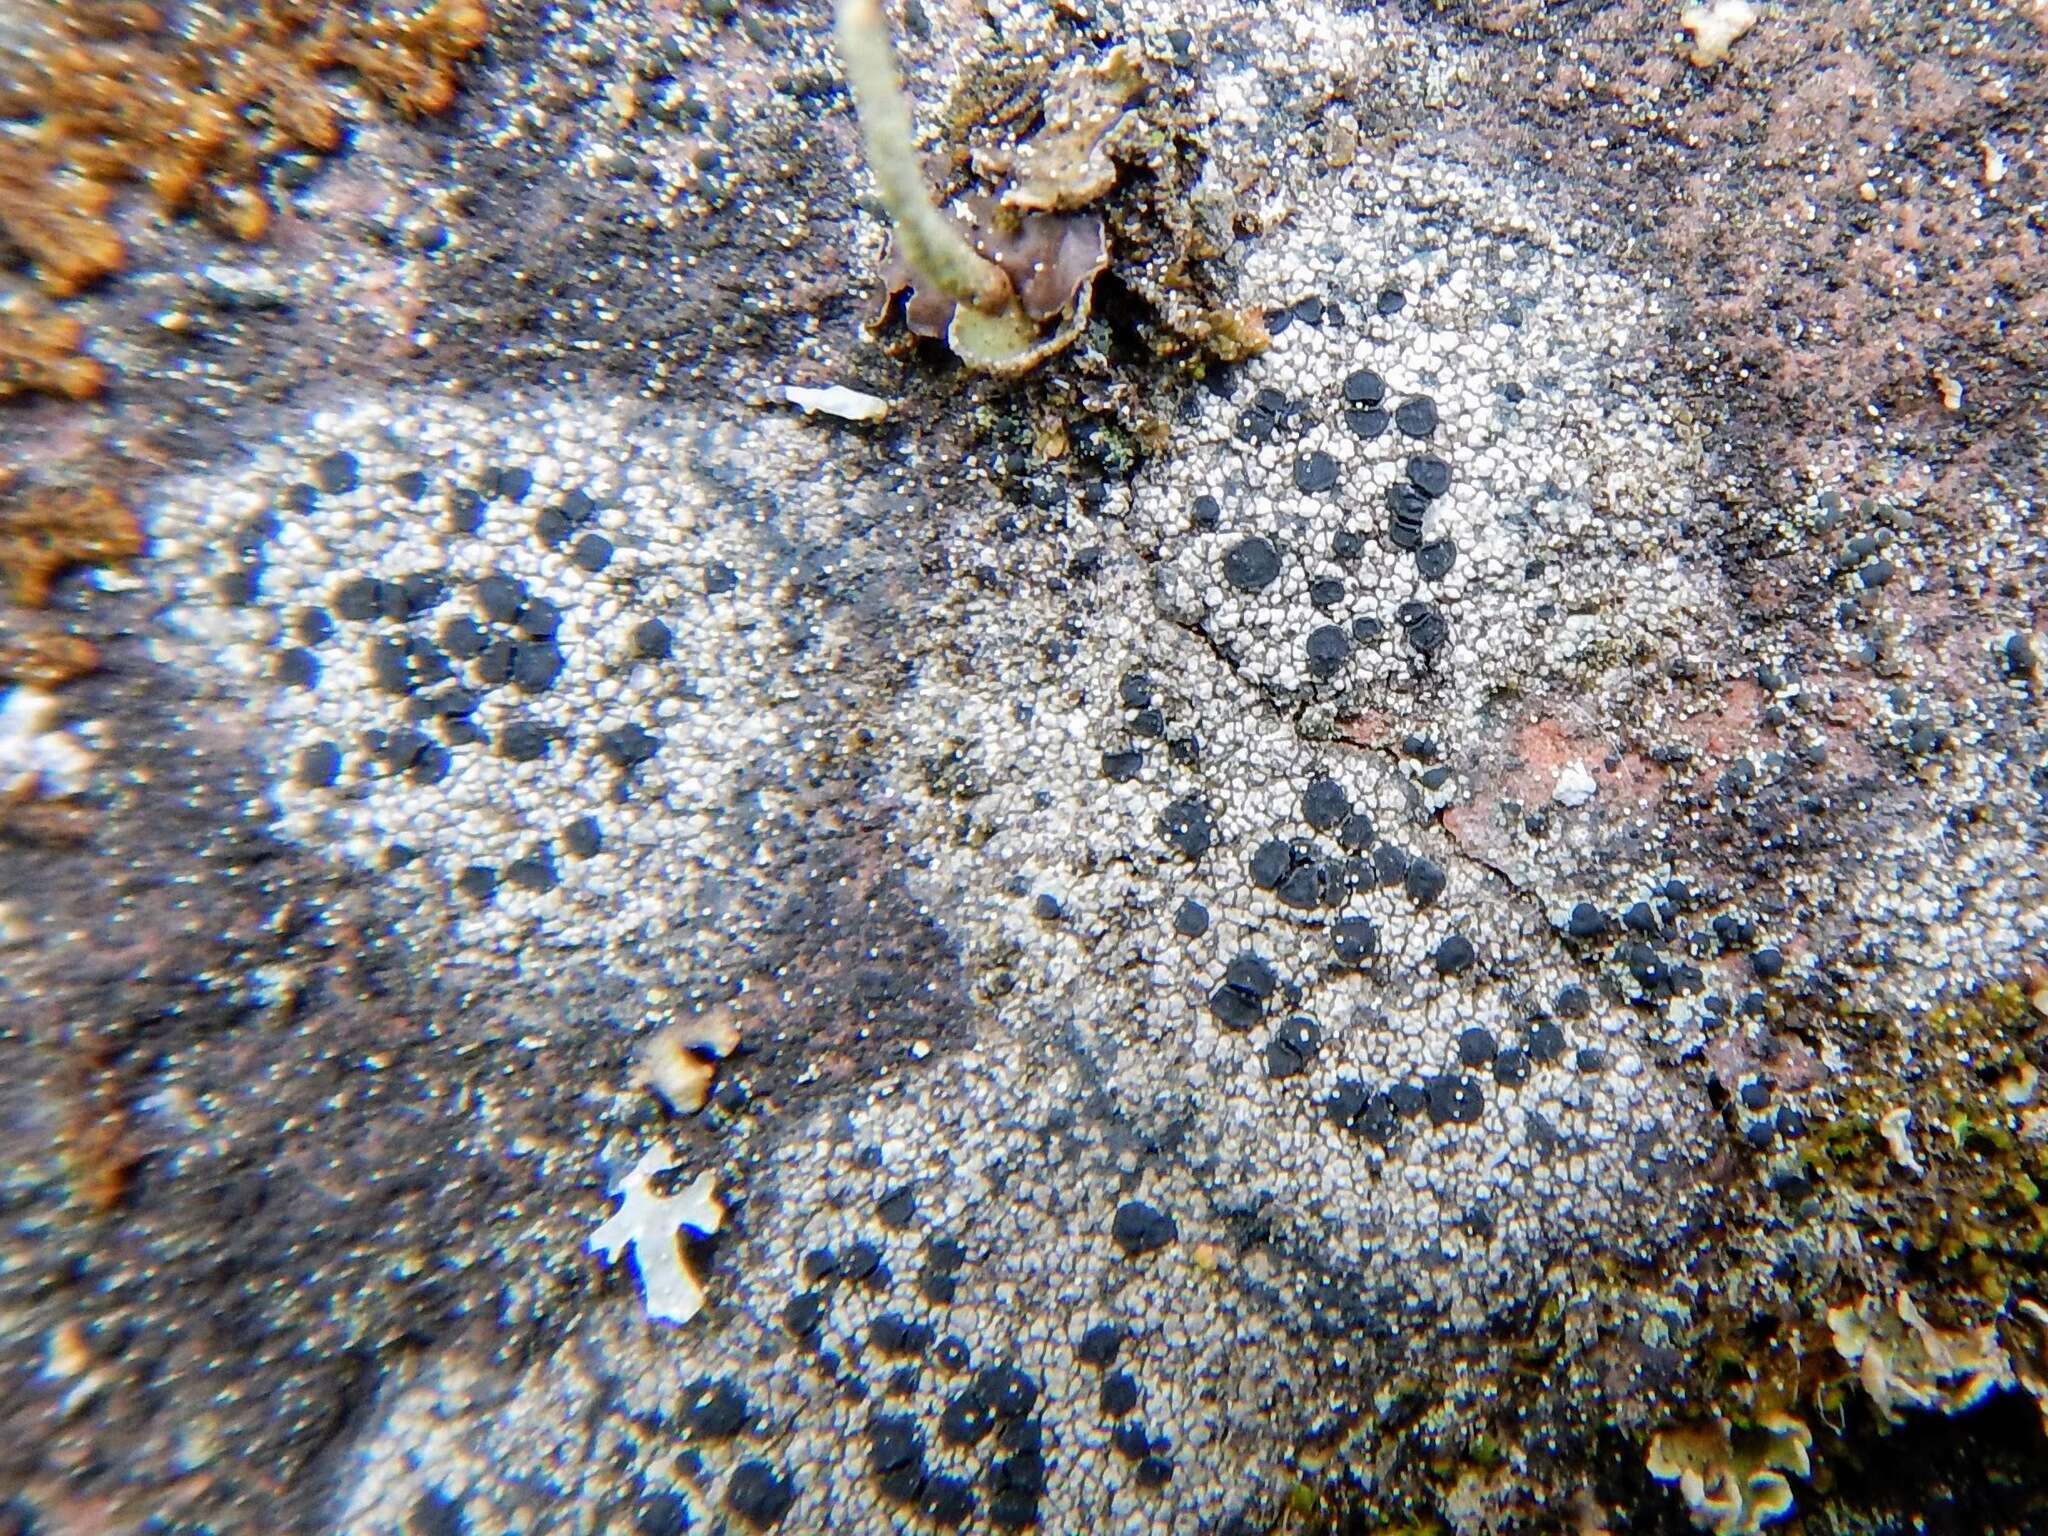 Image of crust porpidia lichen